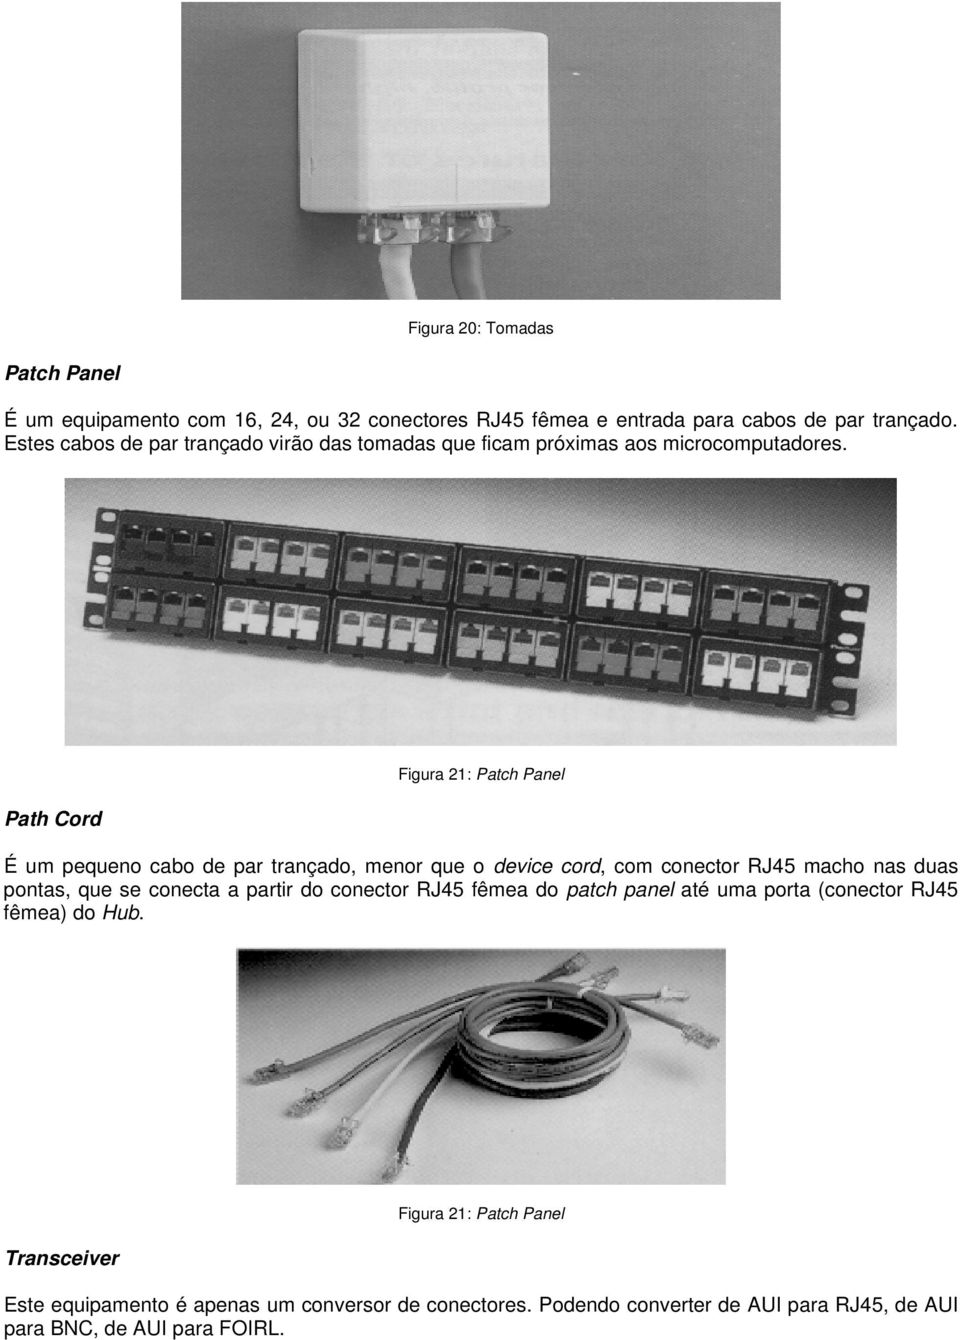 Path Cord Figura 21: Patch Panel É um pequeno cabo de par trançado, menor que o device cord, com conector RJ45 macho nas duas pontas, que se conecta a